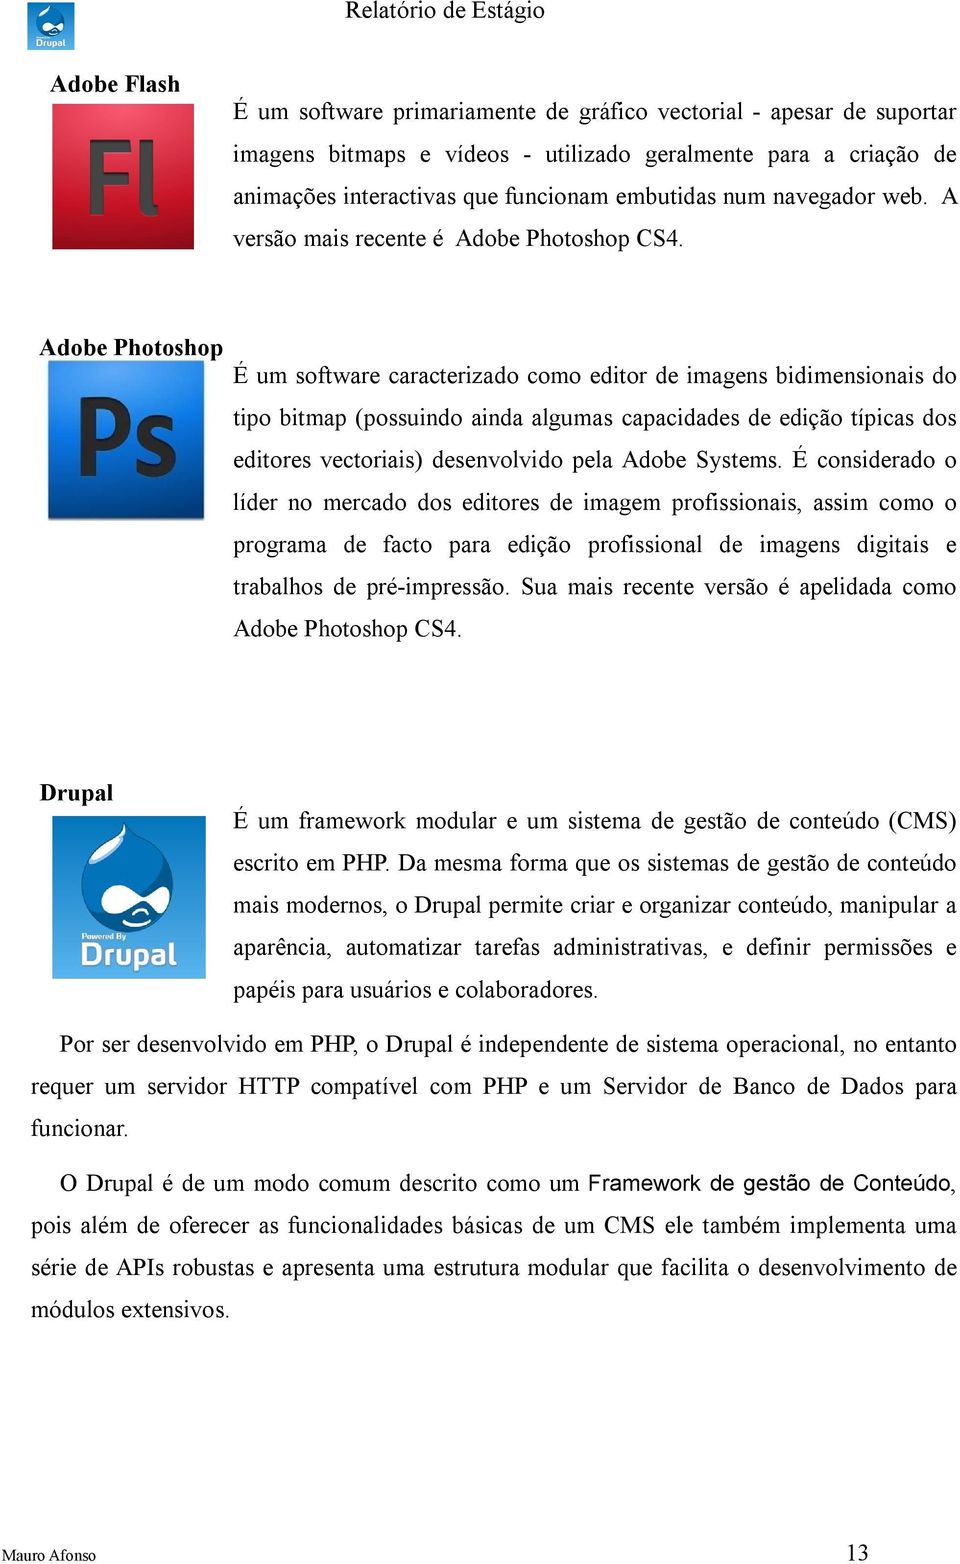 Adobe Photoshop É um softwre crcterizdo como editor de imgens bidimensionis do tipo bitmp (possuindo ind lgums cpciddes de edição típics dos editores vectoriis) desenvolvido pel Adobe Systems.